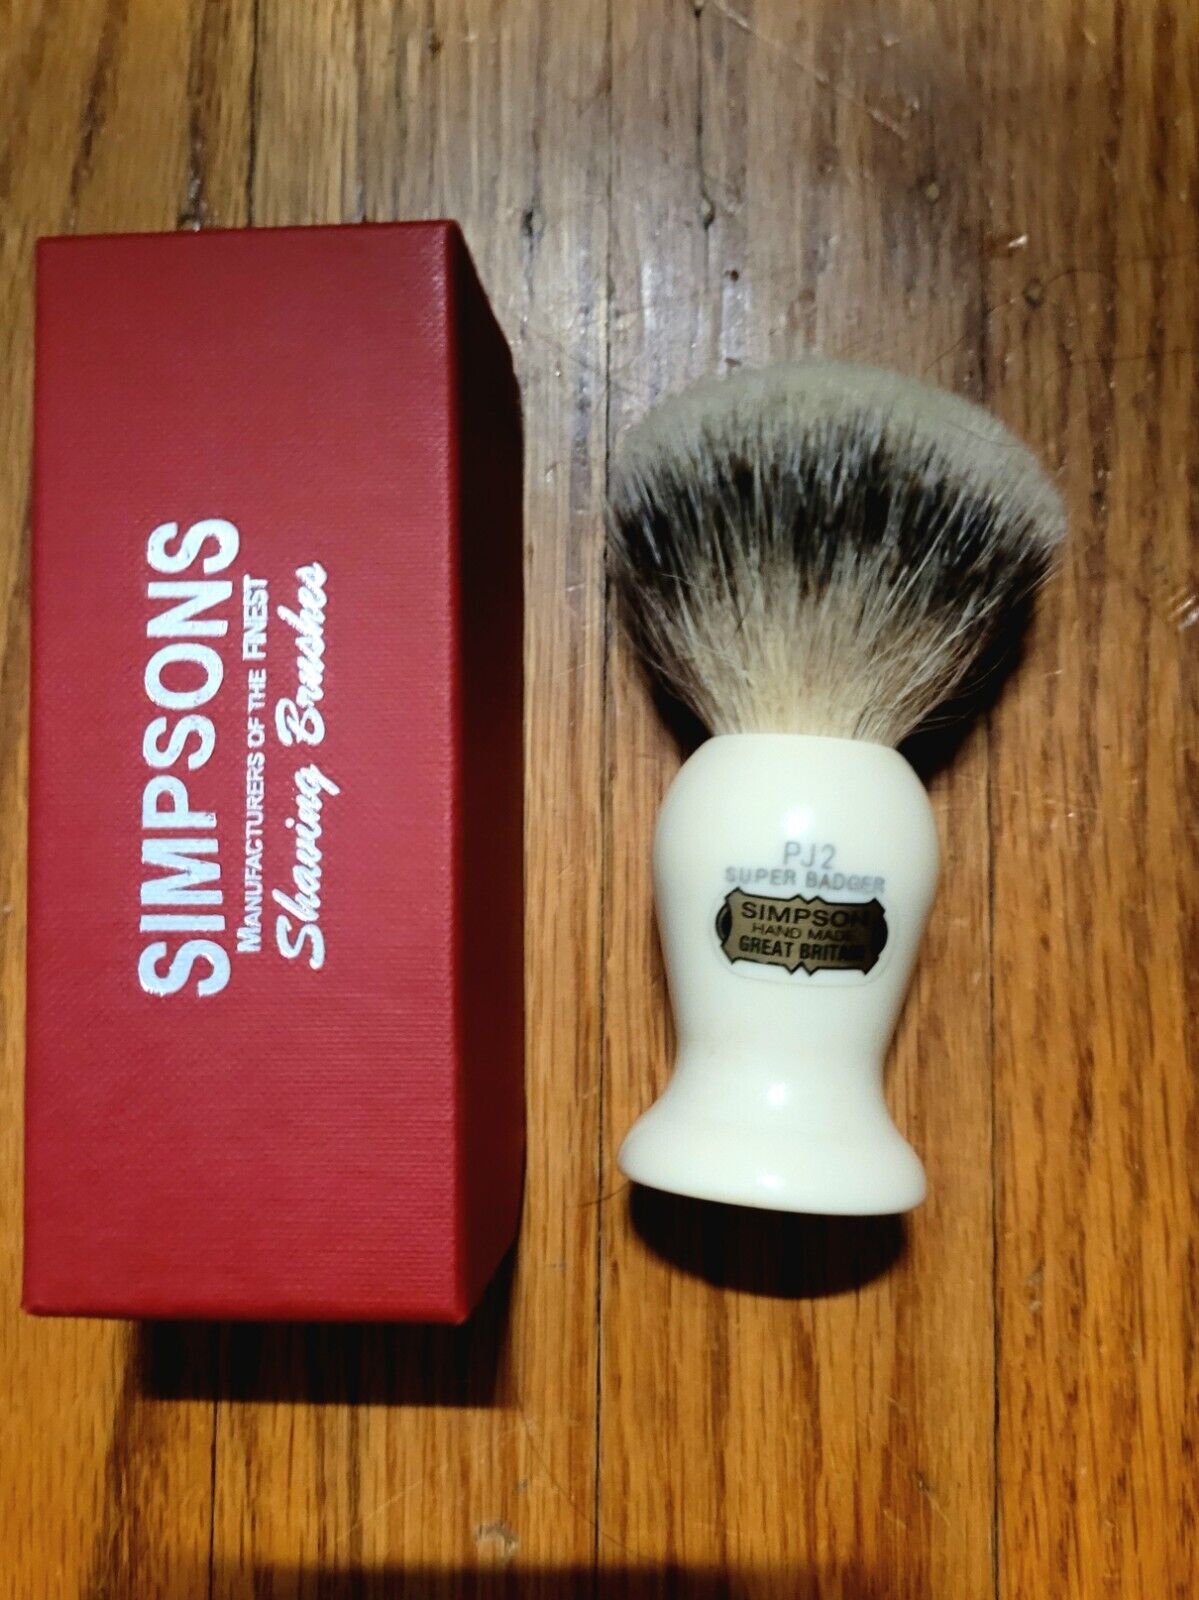 Simpsons Persian Jar 2 Pj2 Super Badger Shaving Brush, 20mm